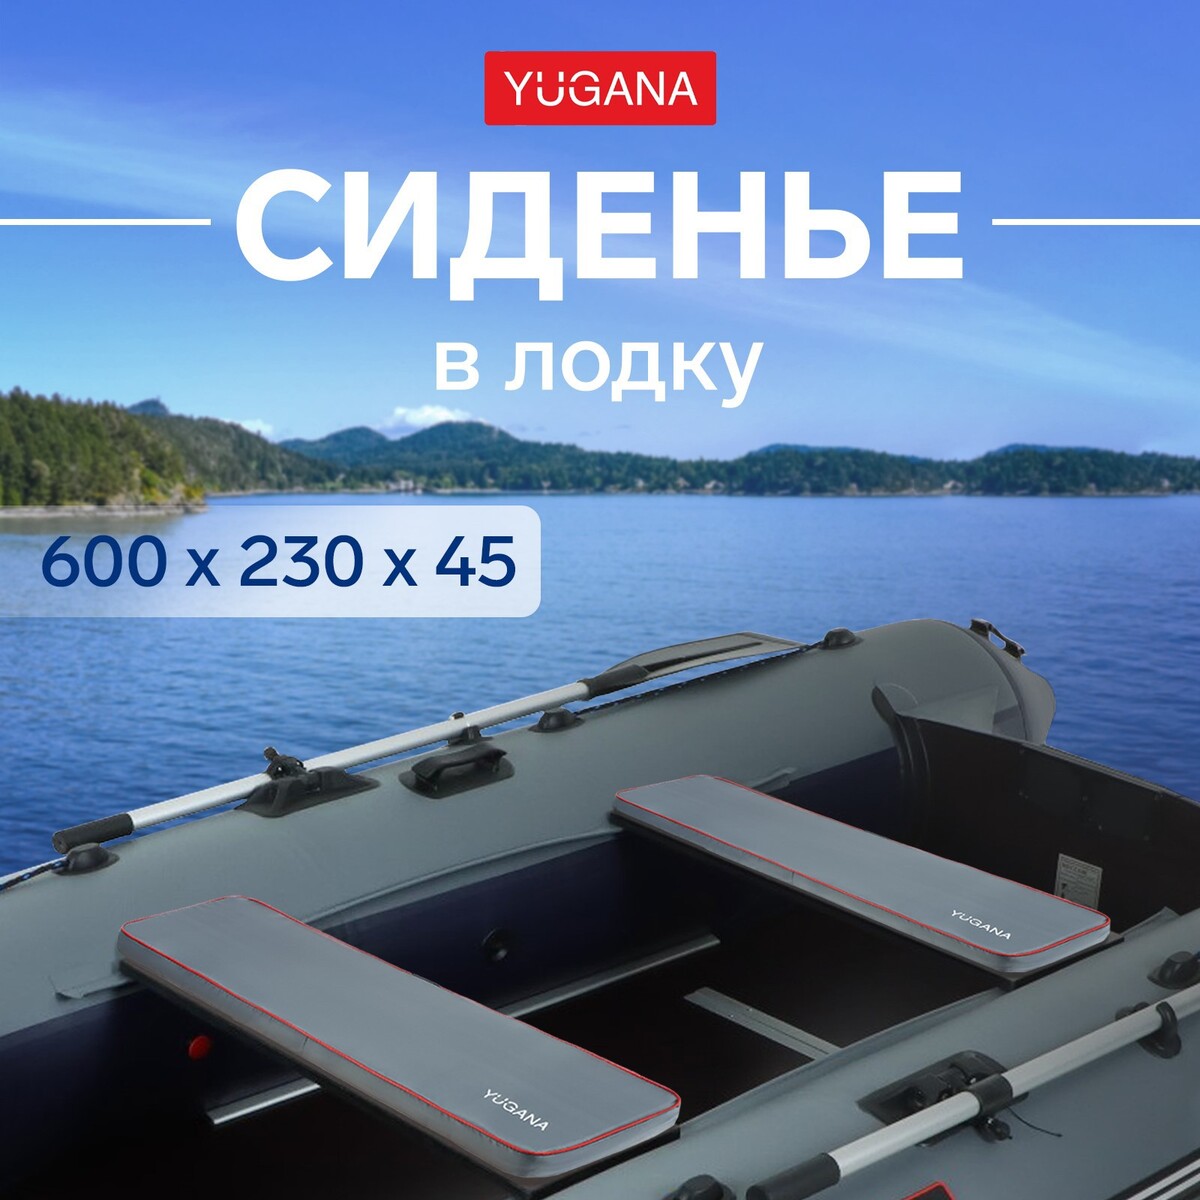 Сиденье в лодку yugana, цвет серый, 600 x 230 x 45 мм сиденье для унитаза с крышкой 43×37 см мягкое серый рисунок микс